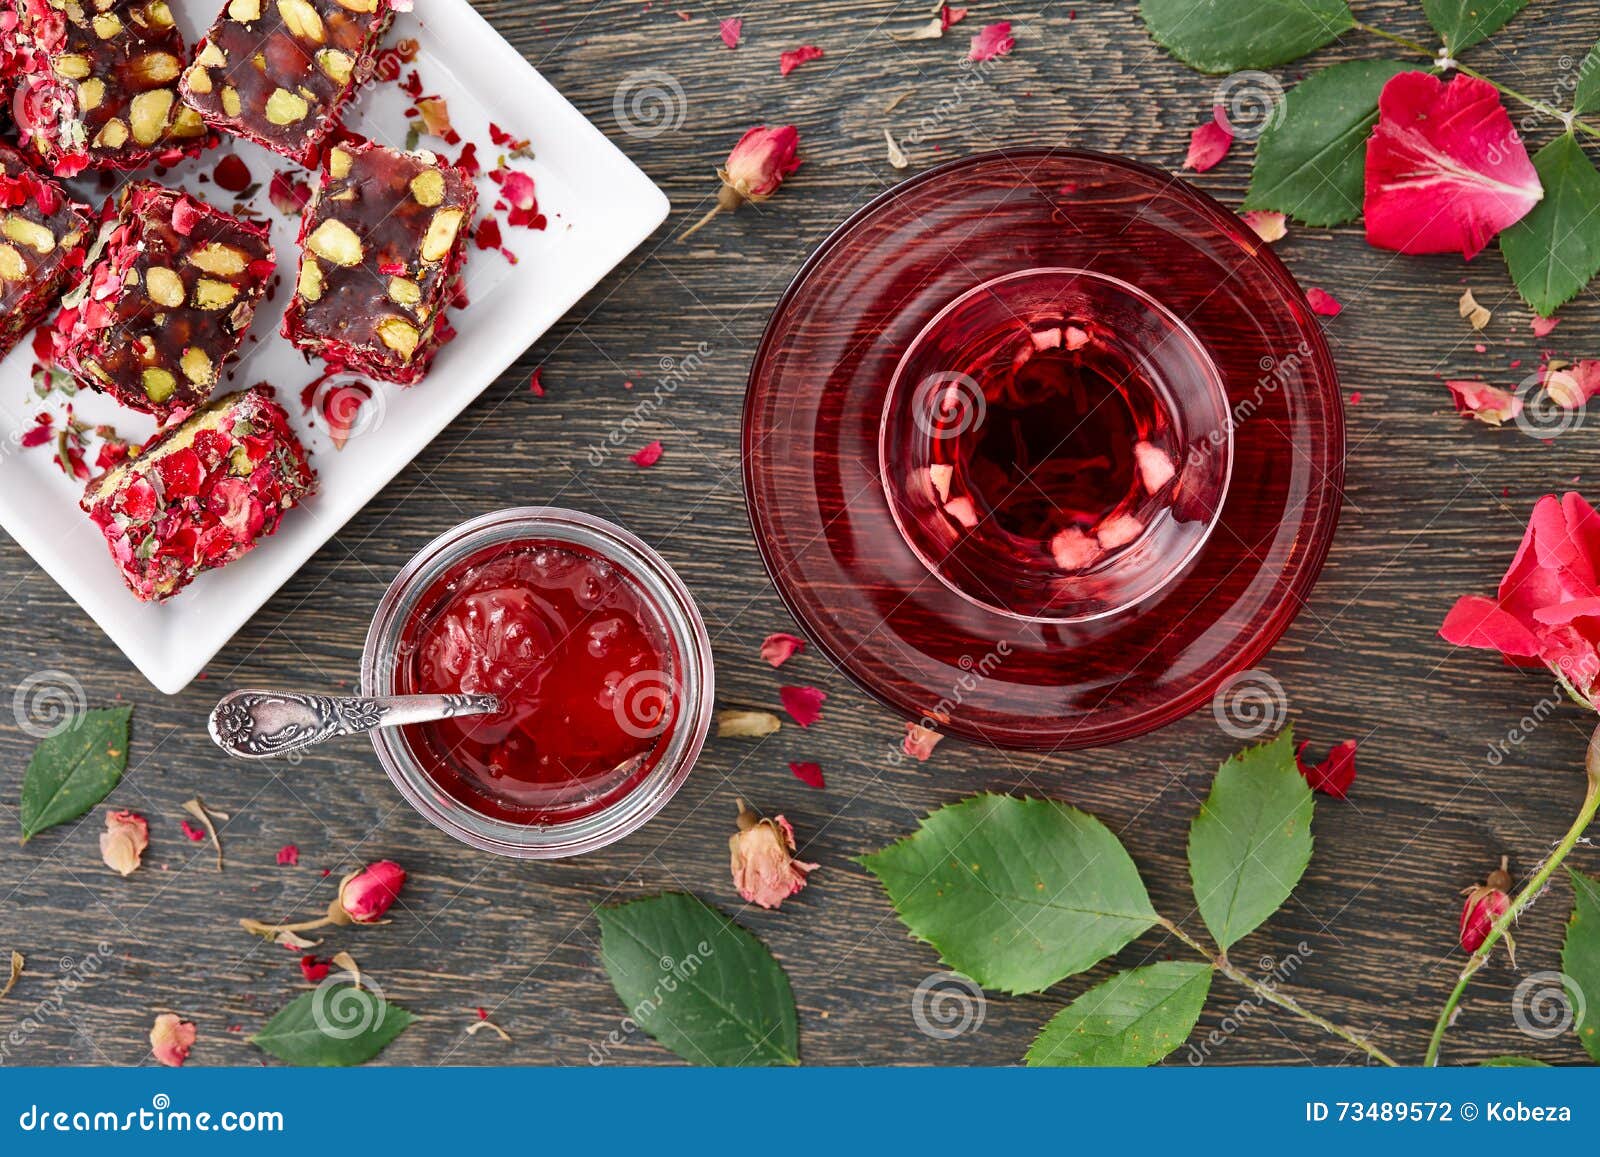 hibiscus-tea-rose-jam-turkish-delight-glass-cup-fruit-pieces-petals-dark-wooden-background-73489572.jpg